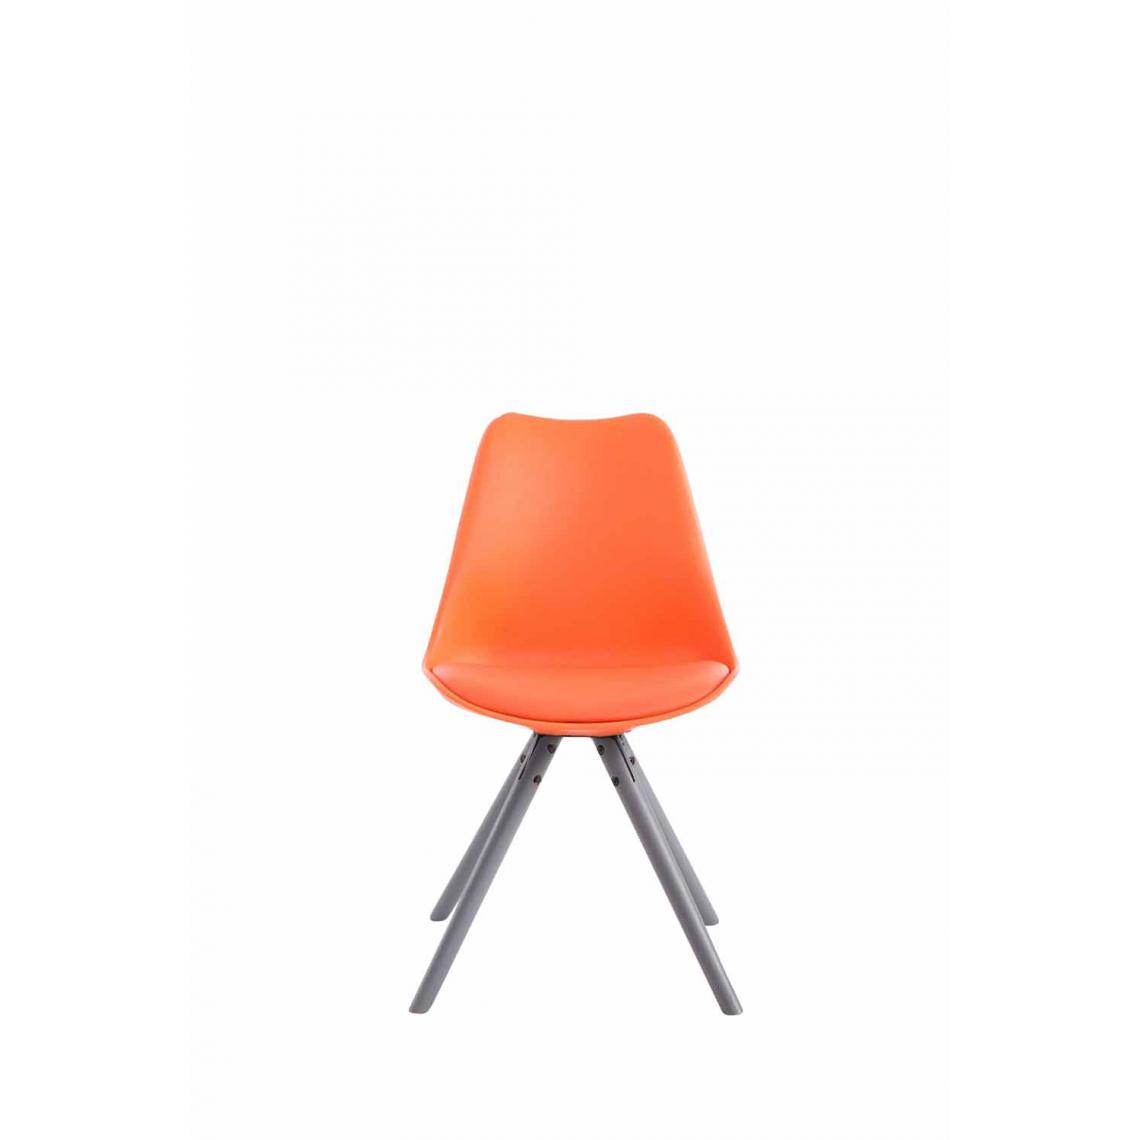 Icaverne - Moderne Chaise visiteur edition Katmandou cuir synthétique rond gris couleur Orange - Chaises